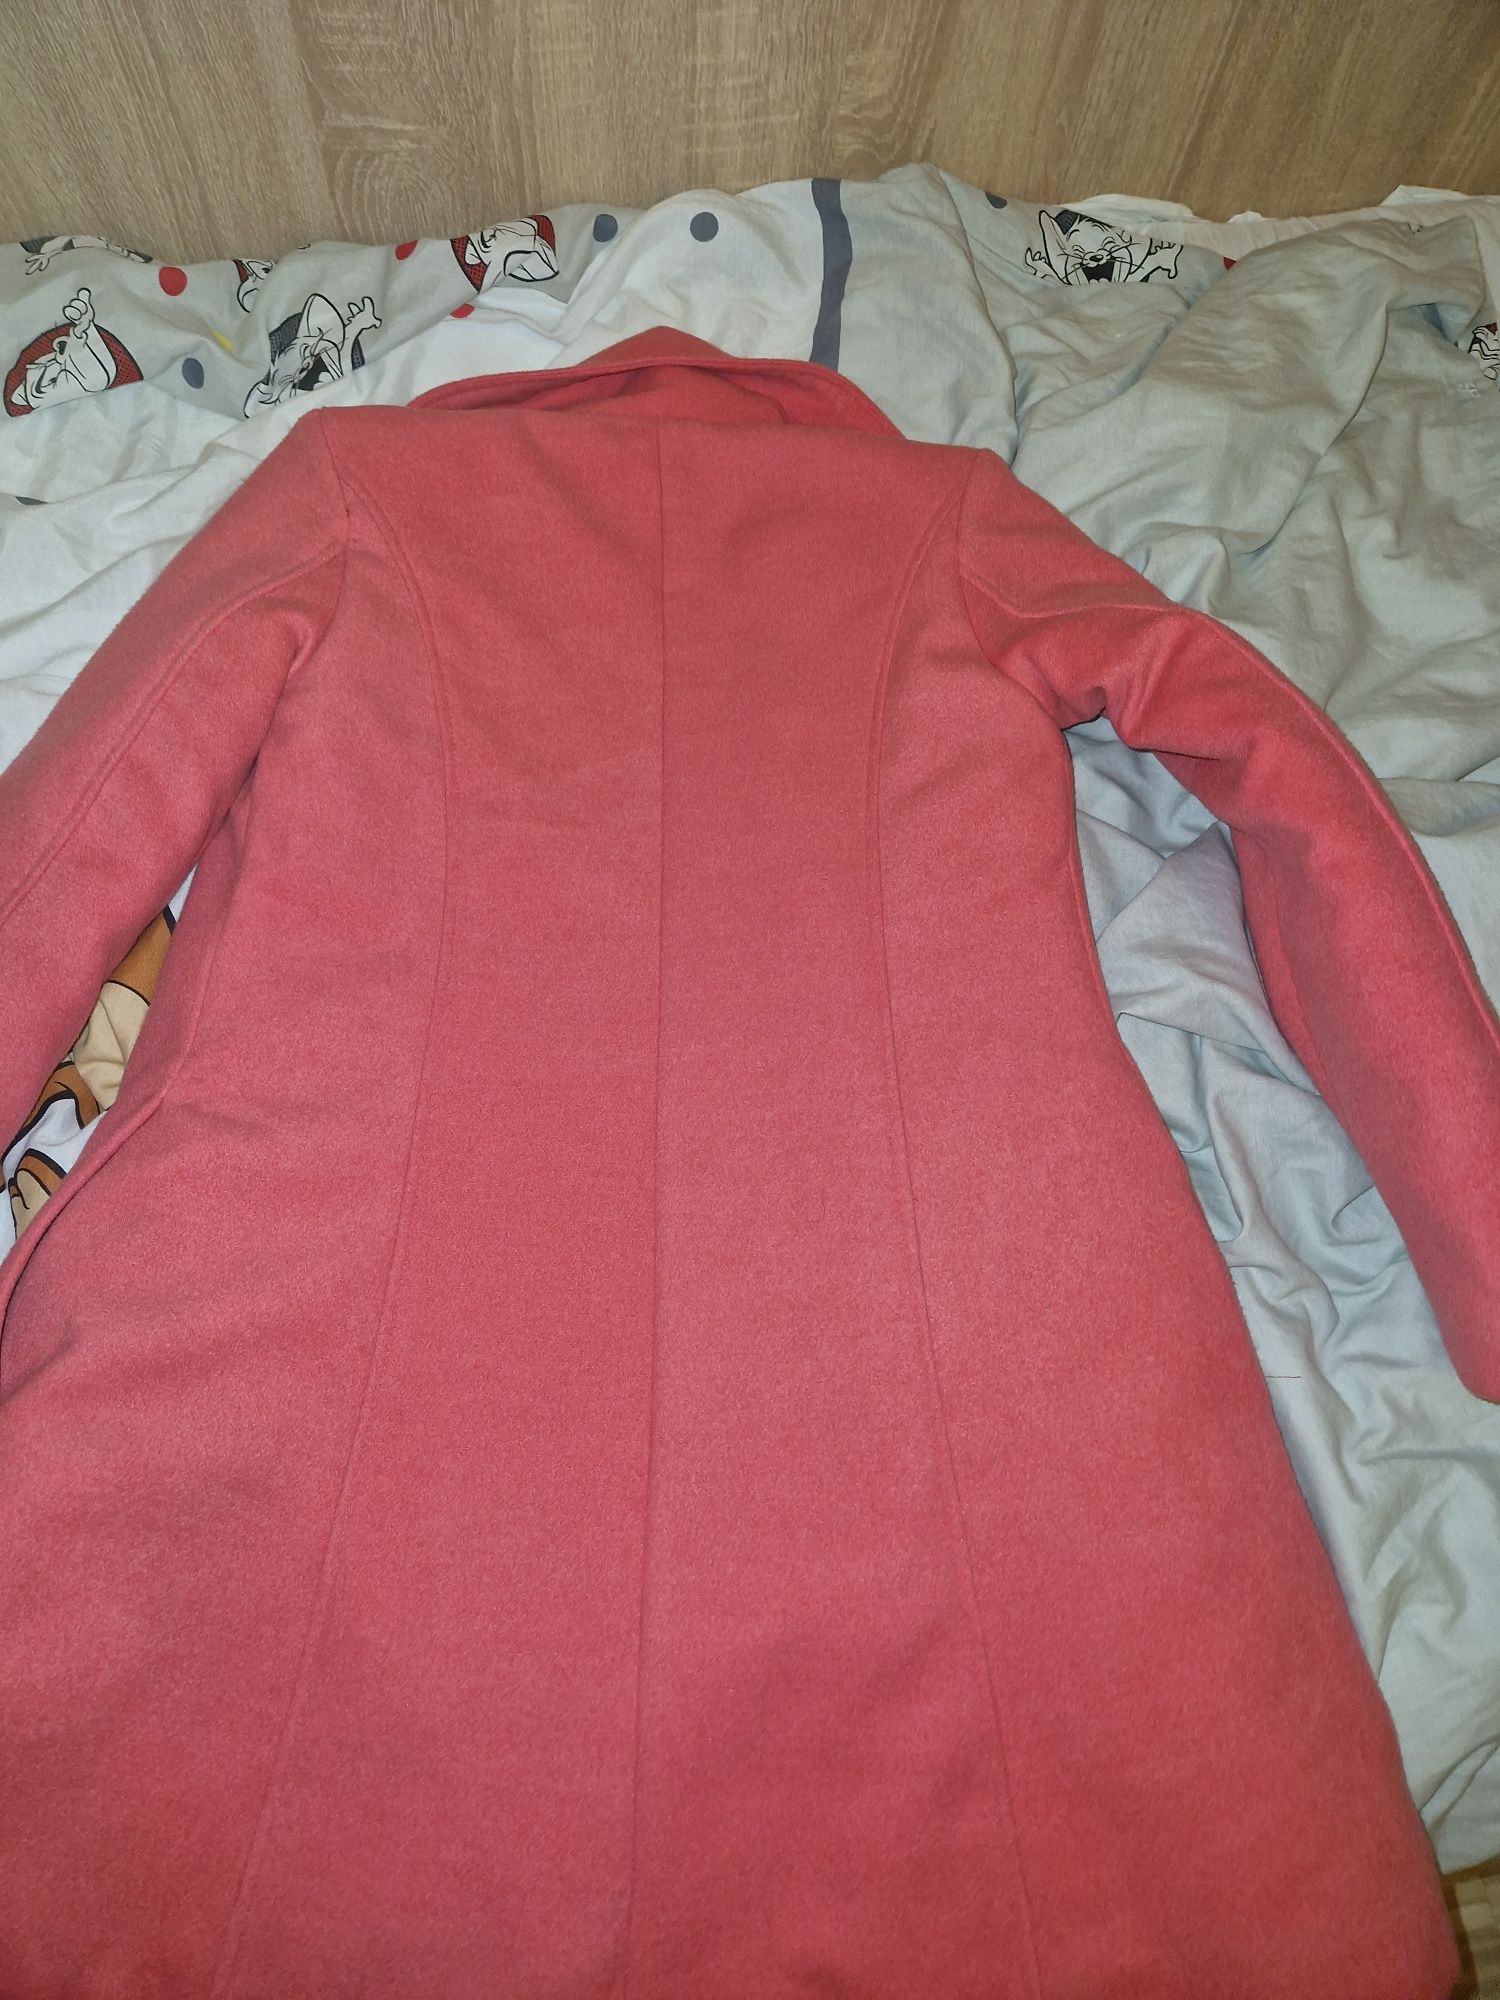 Palton roz pentru fetite, 36, 9-10 ani, cu palarie, cordon, ca no